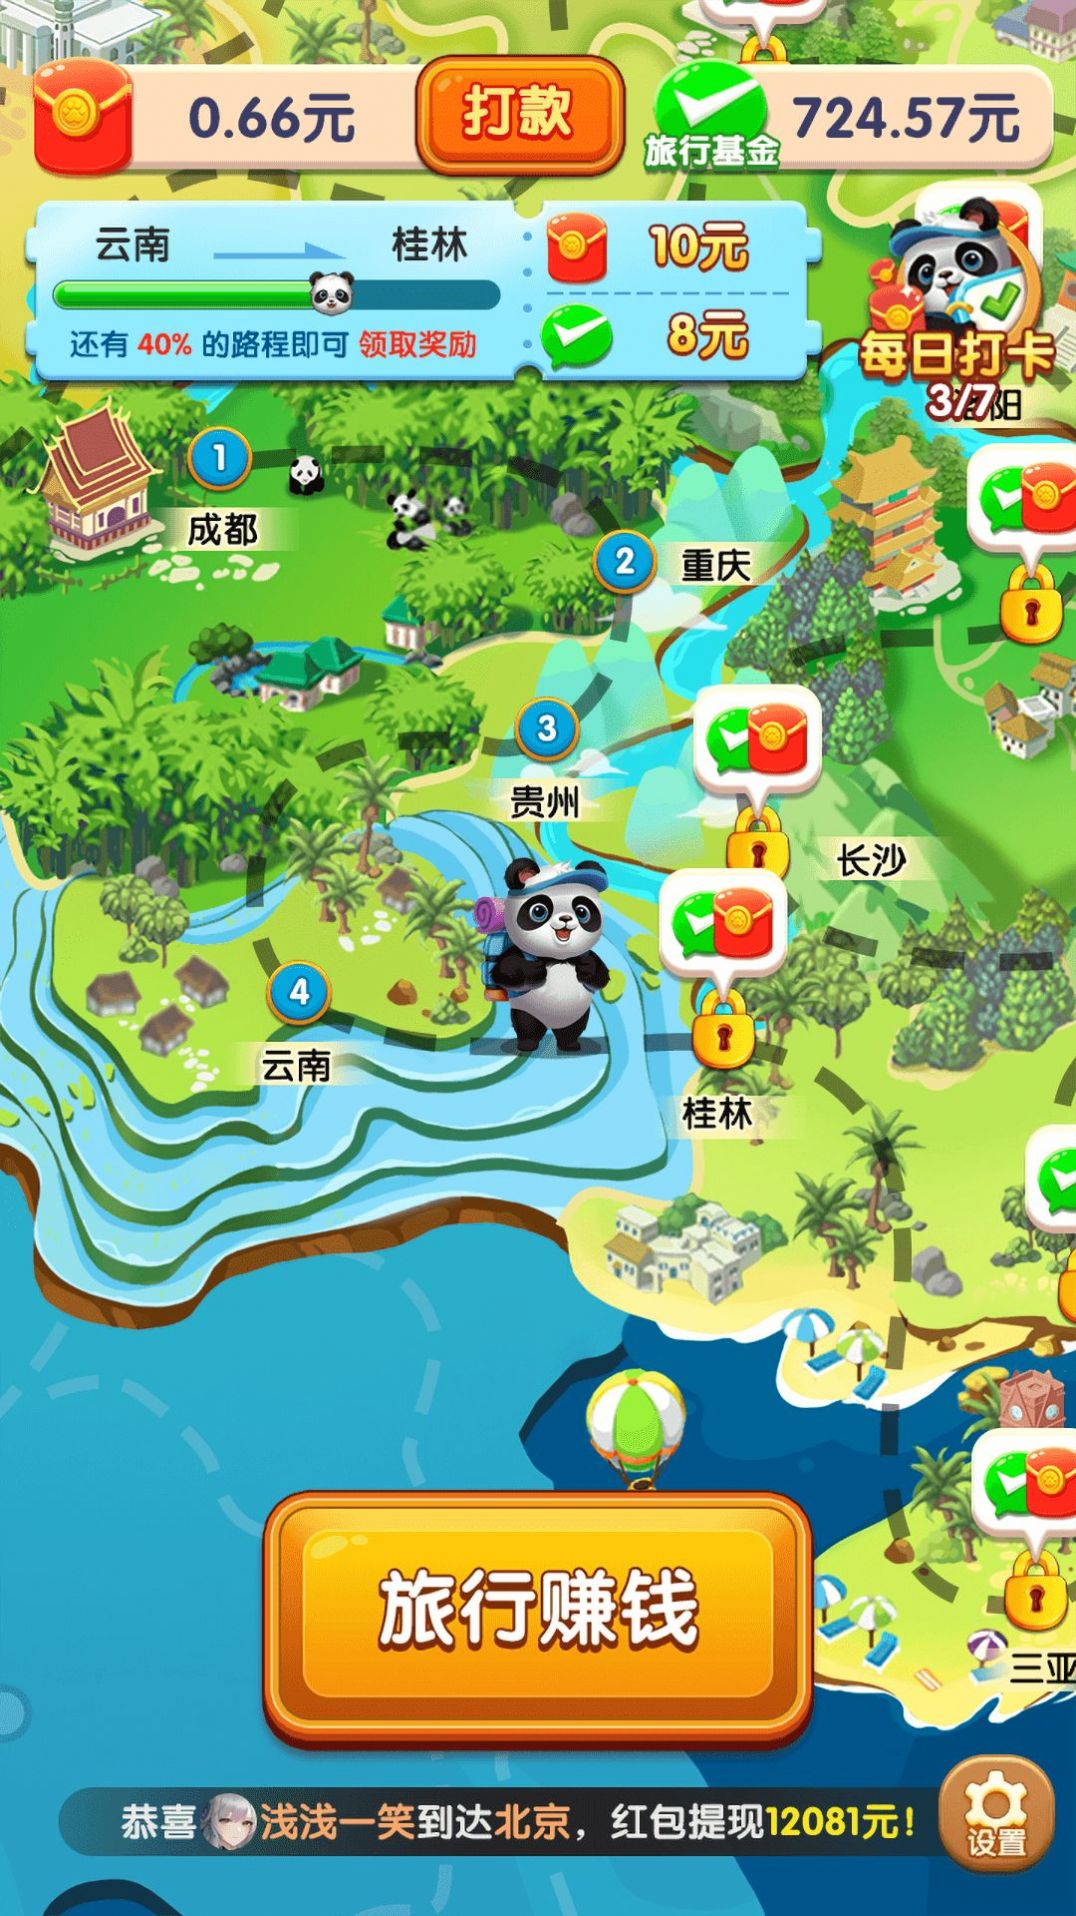 熊猫爱旅行下载app官方版图片1